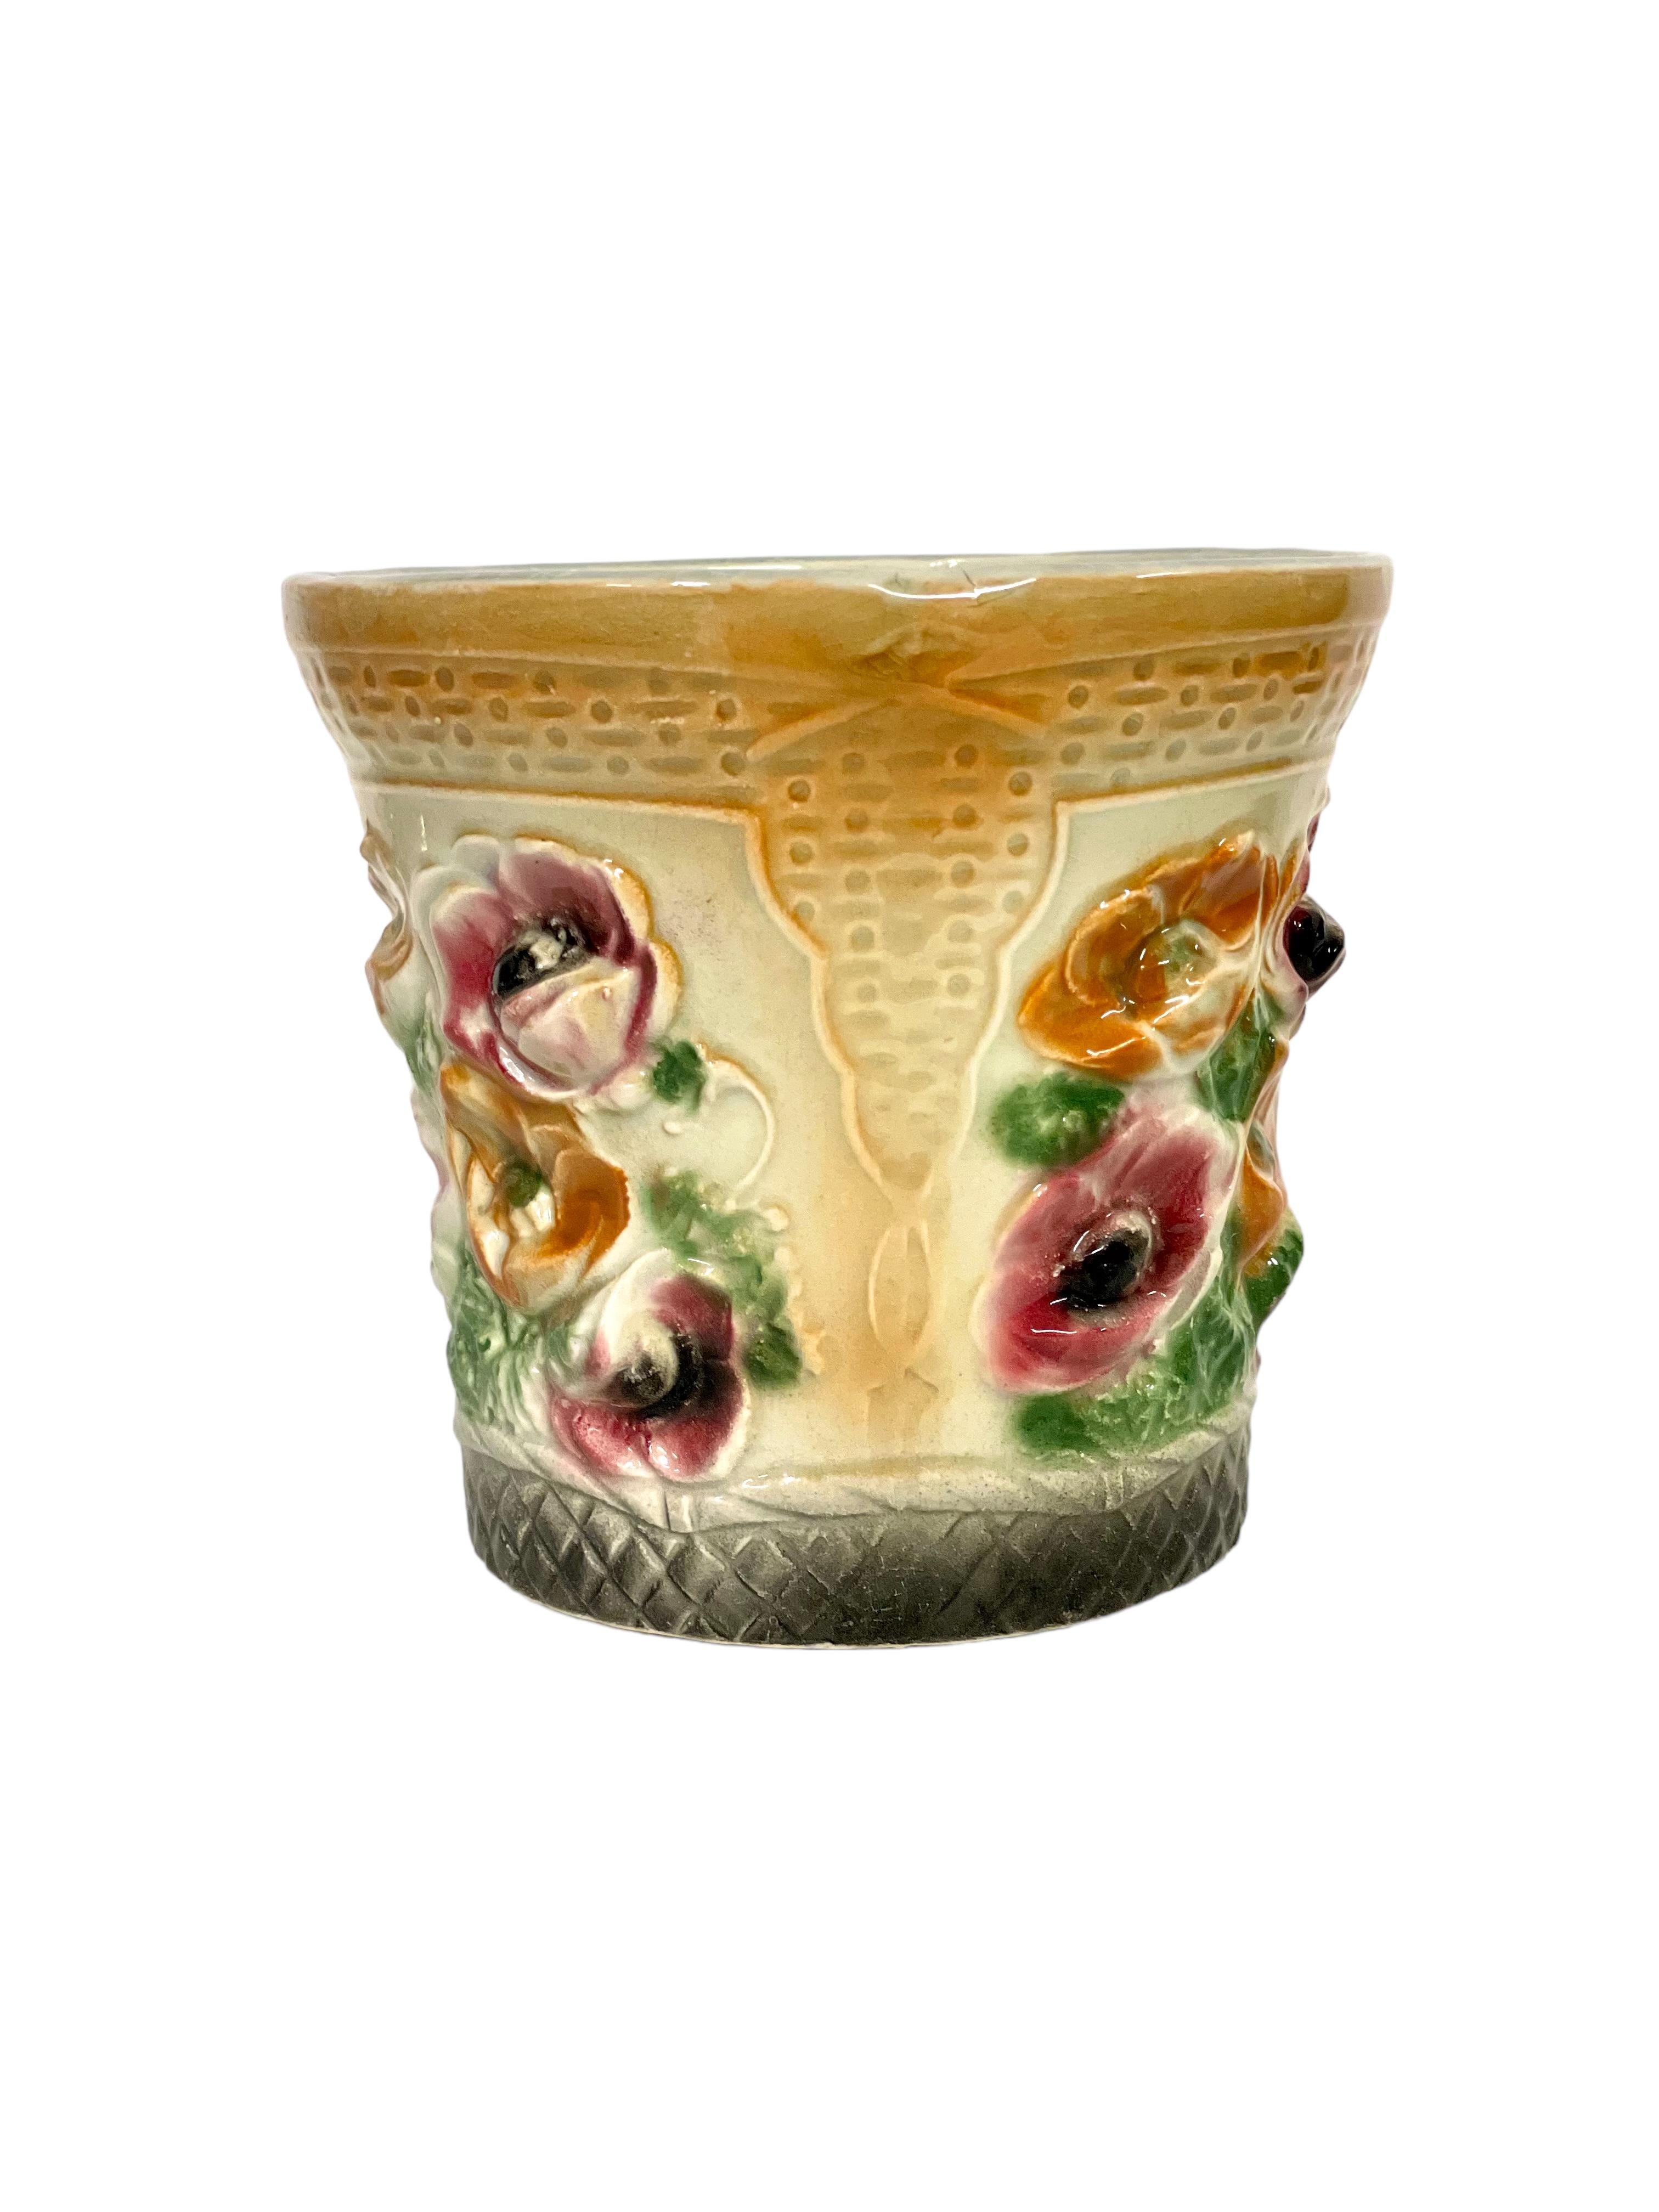 Cache-pot en majolique du XIXe siècle, très coloré, vivement décoré d'un motif envoûtant de coquelicots en fleurs et de feuillage, sur un fond jaune imprimé d'une texture complexe de vannerie. La faïence majolique est réputée pour ses couleurs